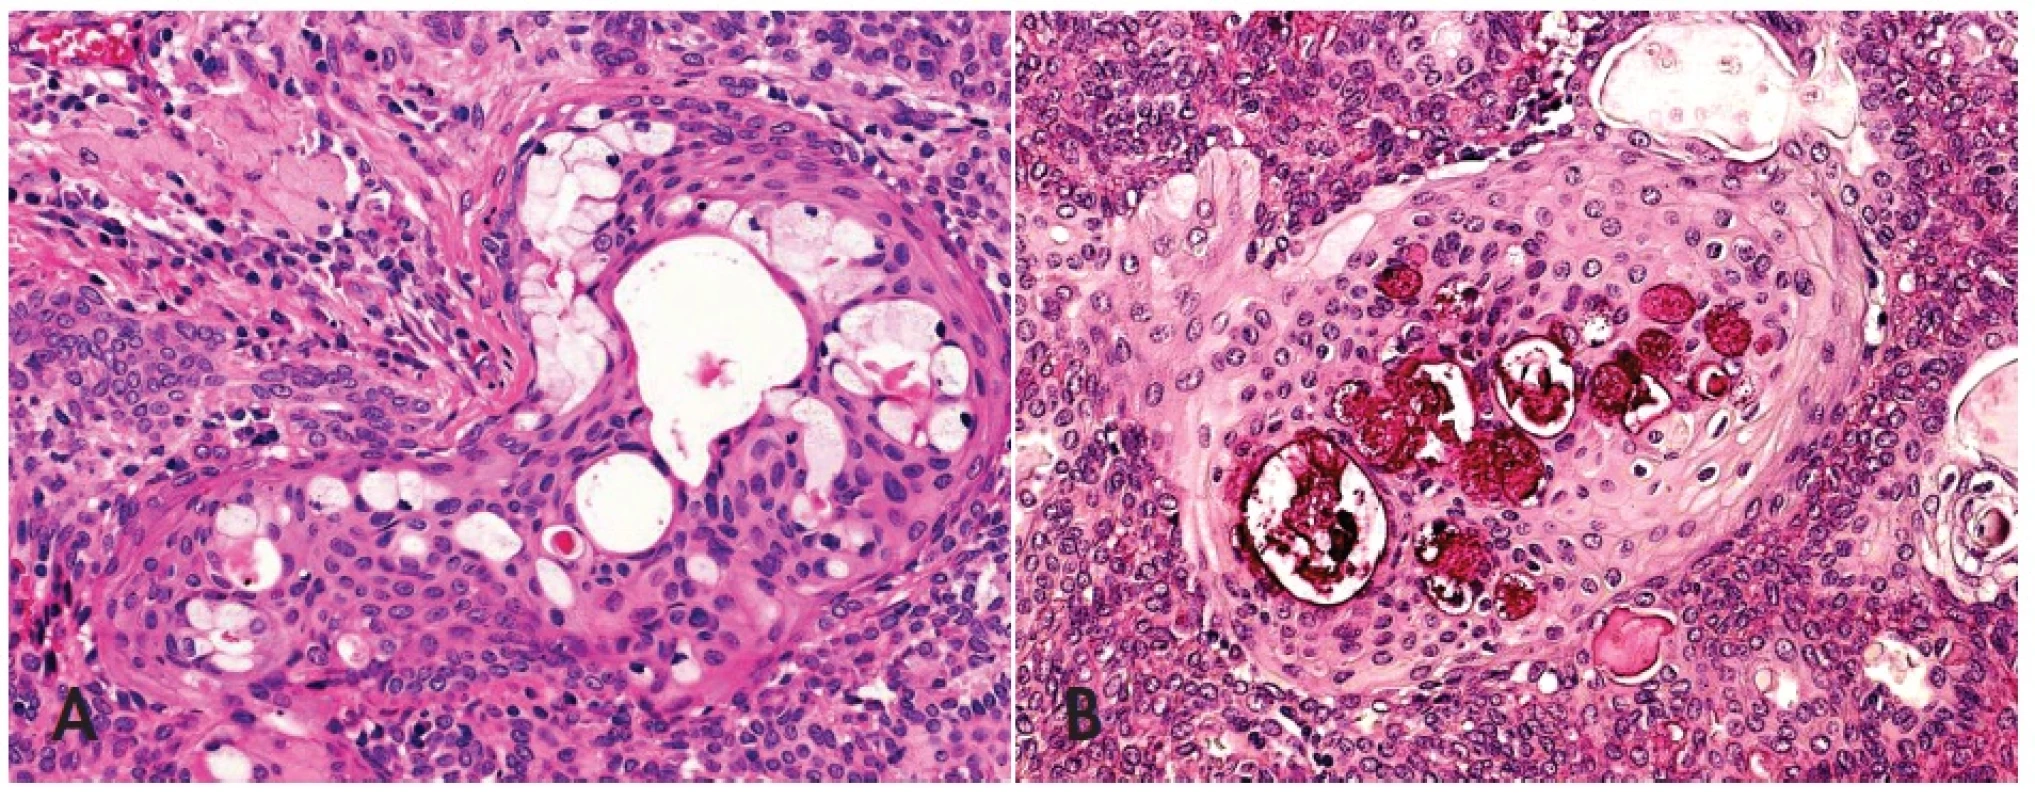 Skvamo-mucinózní metaplázie v pleomorfním adenomu napodobující mukoepidermoidní karcinom low grade (A), HE, 400x. Pohárkové buňky v barvení mucikarminem (B), 400x.